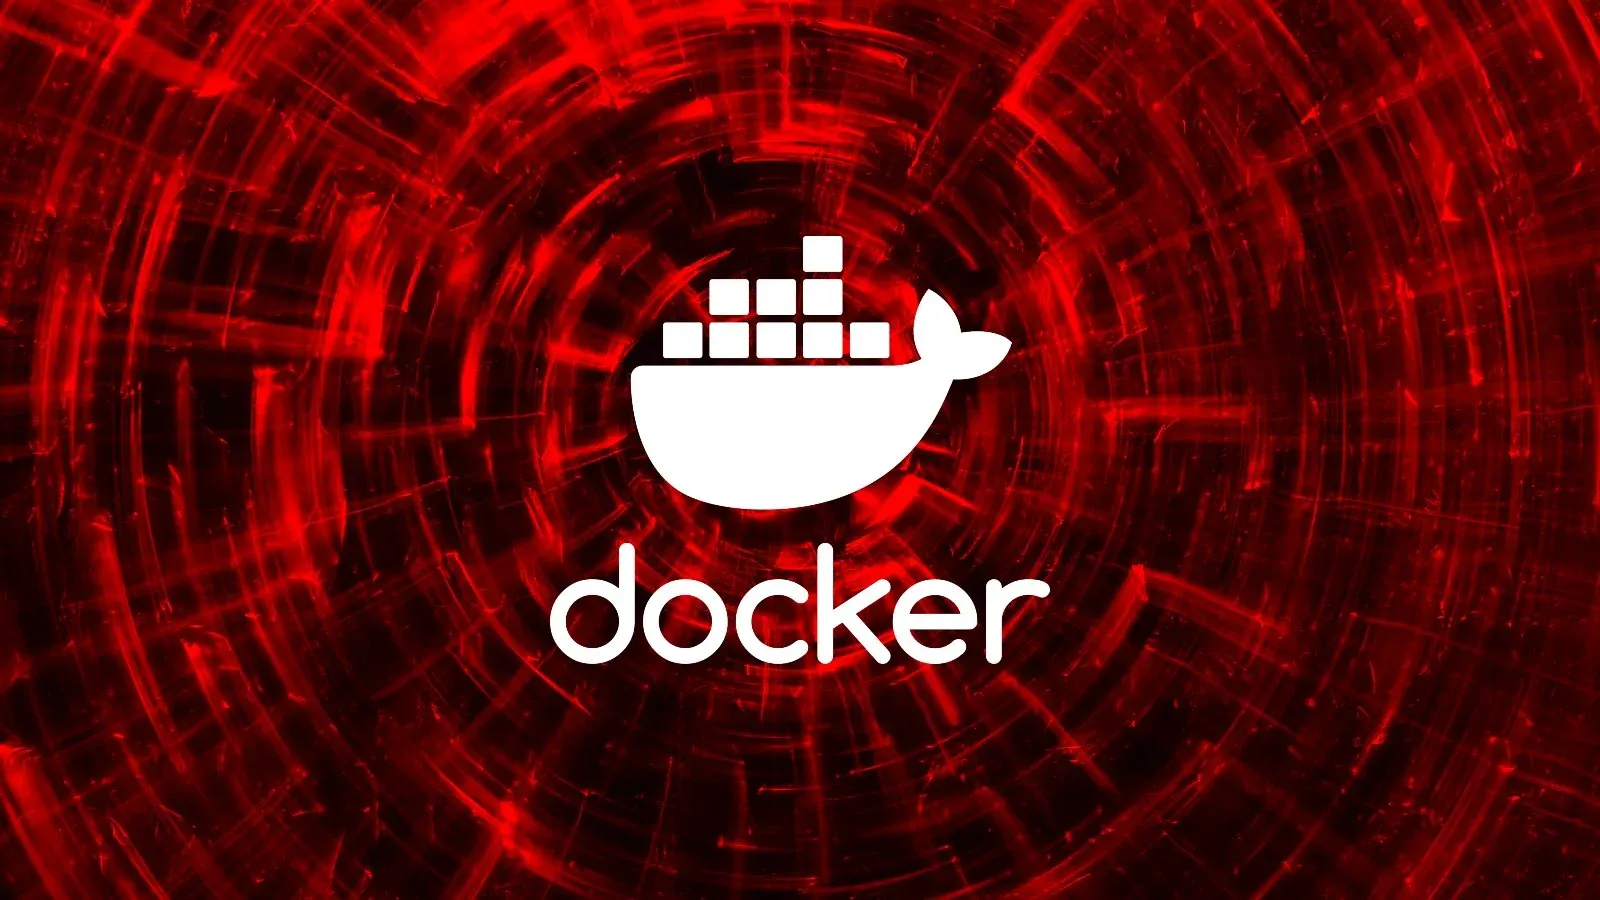 Hàng triệu kho phần mềm Docker chứa mã độc và trang web lừa đảo